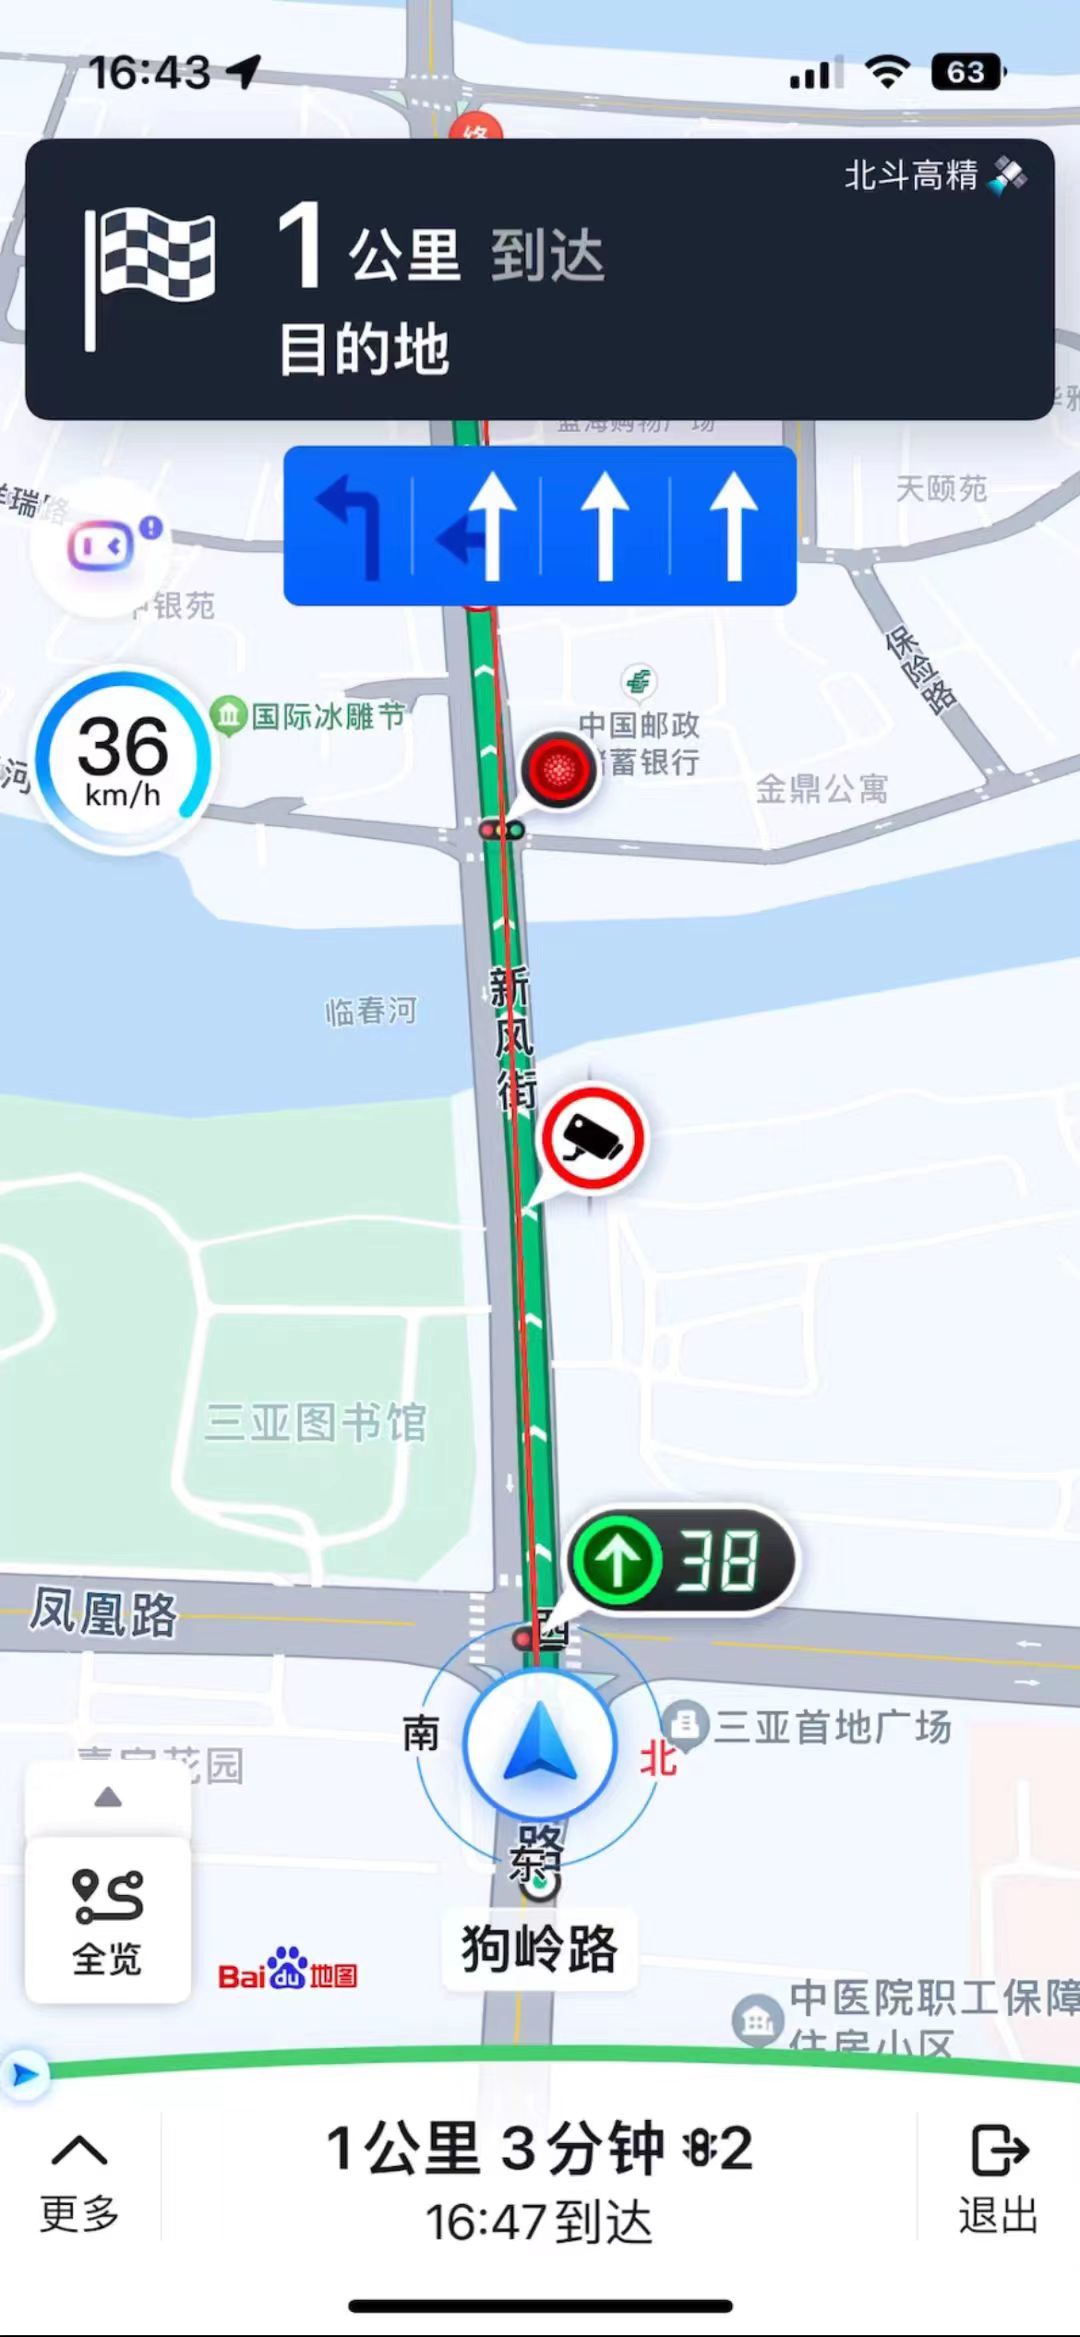 百度地图 App 最新版本 18.8.0 发布，首次引入红绿灯雷达功能，并新增实时停车推荐功能